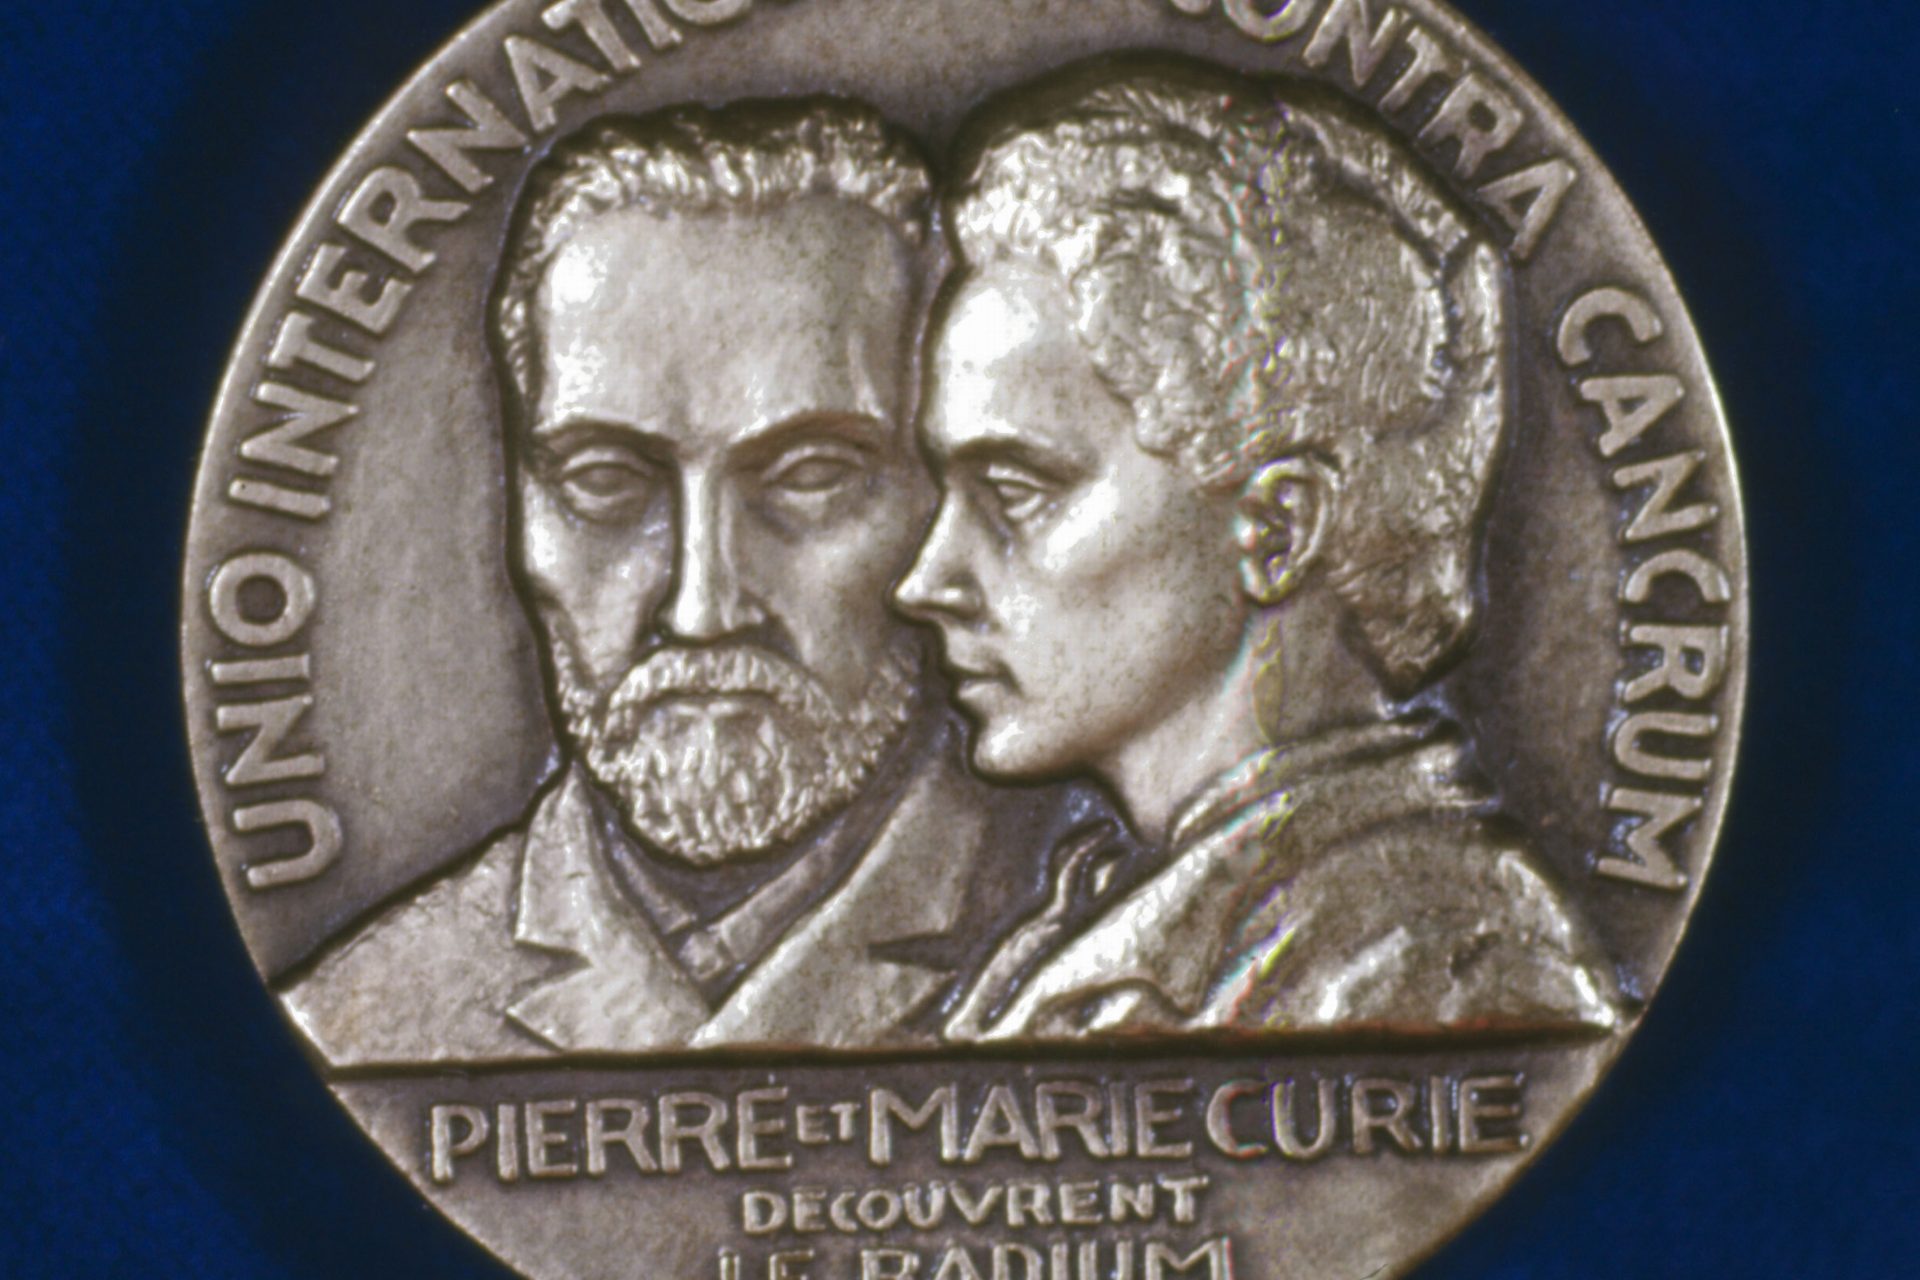 Marie won 2 Nobel Prizes